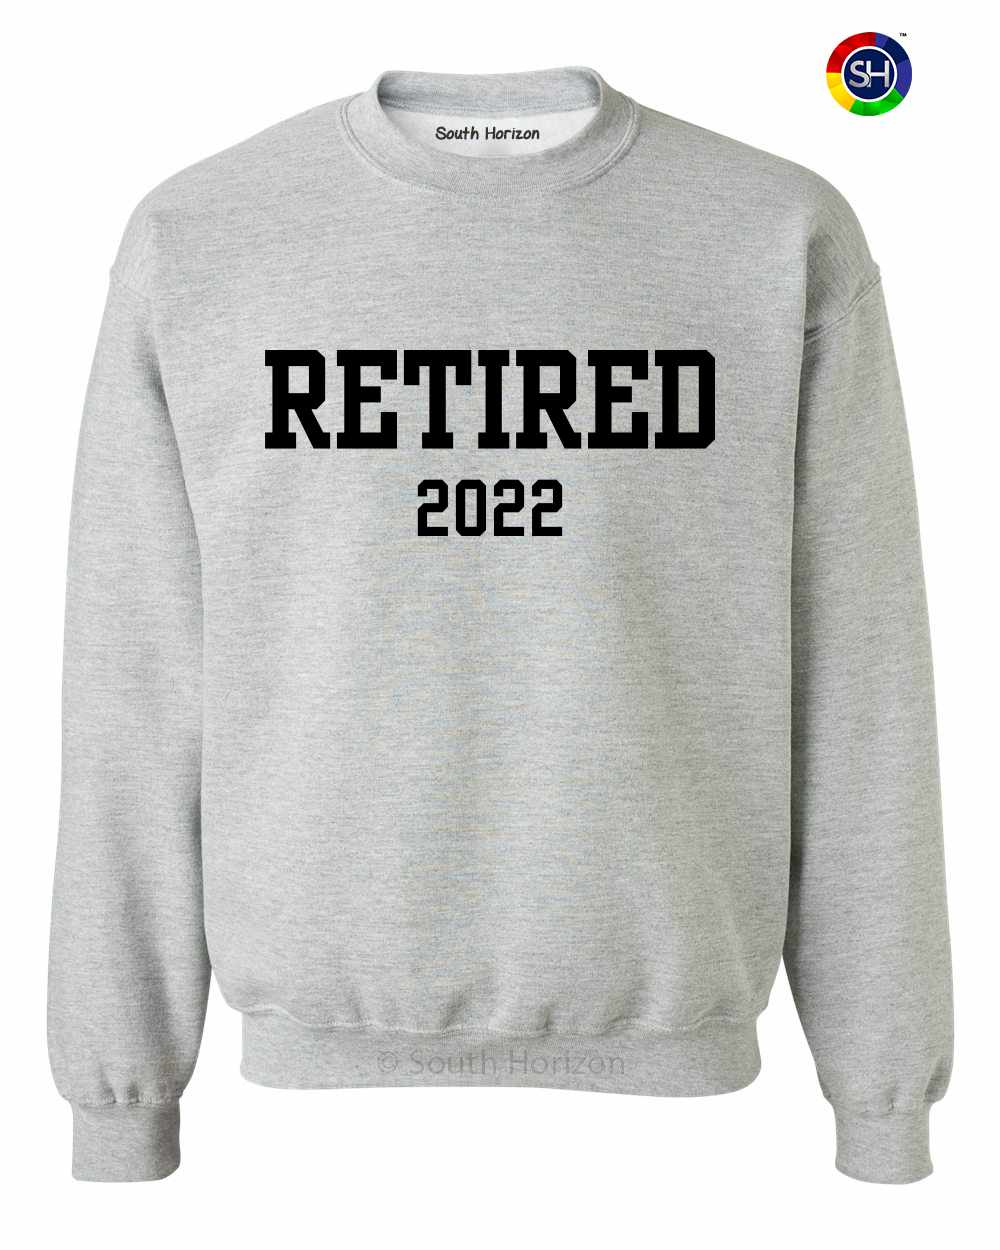 Retired 2022 on SweatShirt